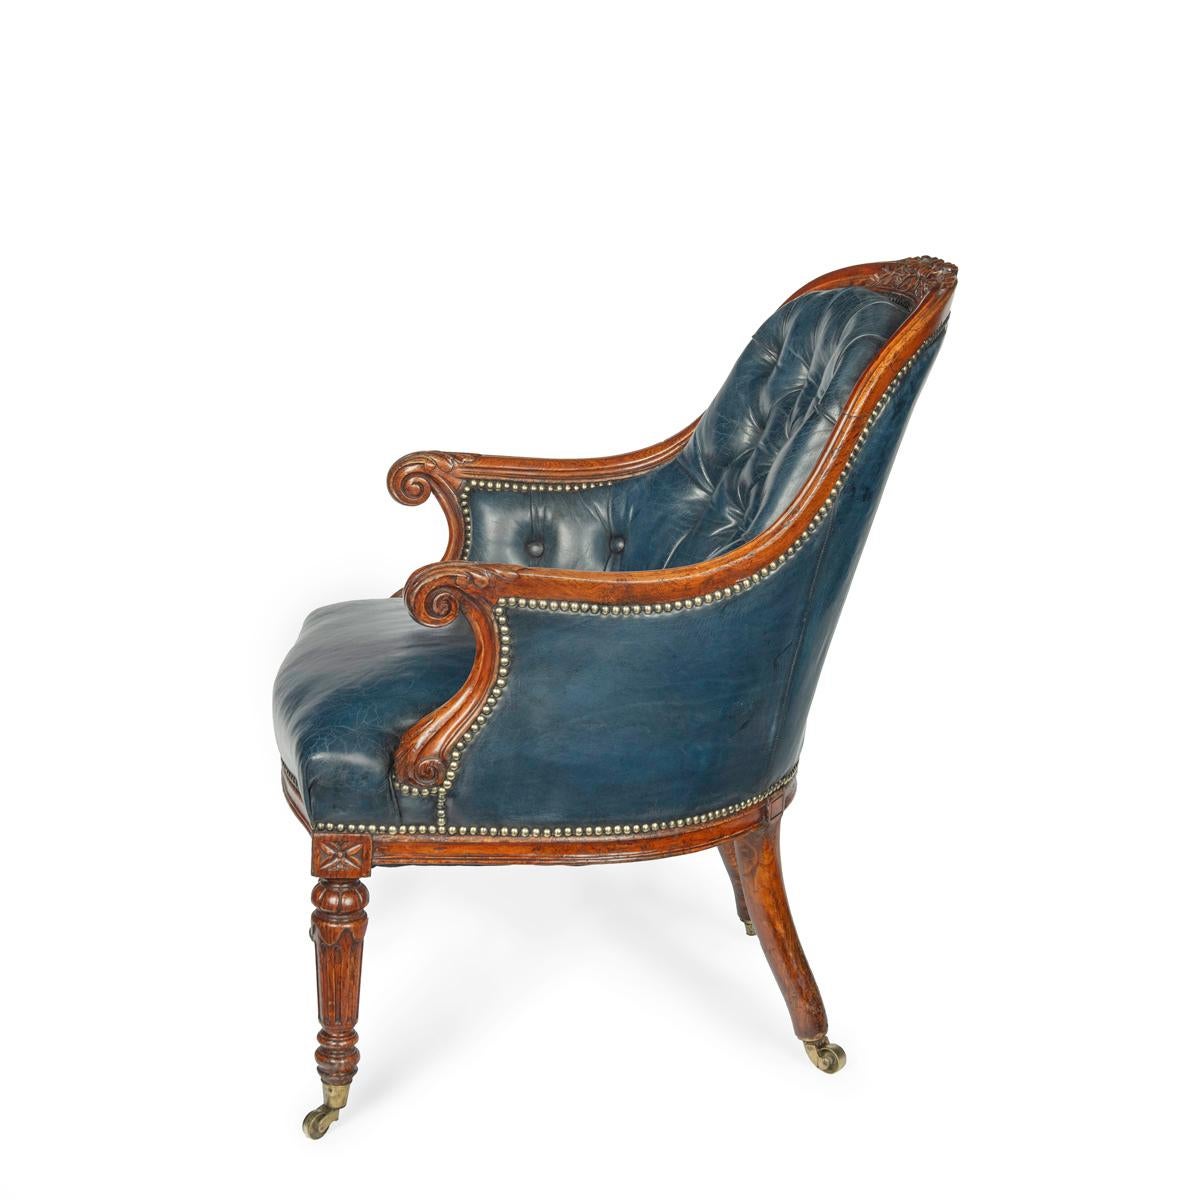 Ein viktorianischer Bibliotheksstuhl aus blauem Eichenleder, mit gewölbter Rückenlehne und geschnitzten Blattwerken in der Mitte. Die geformte Sitzschiene befindet sich über gedrechselten, geriffelten, spitz zulaufenden Beinen, originalen